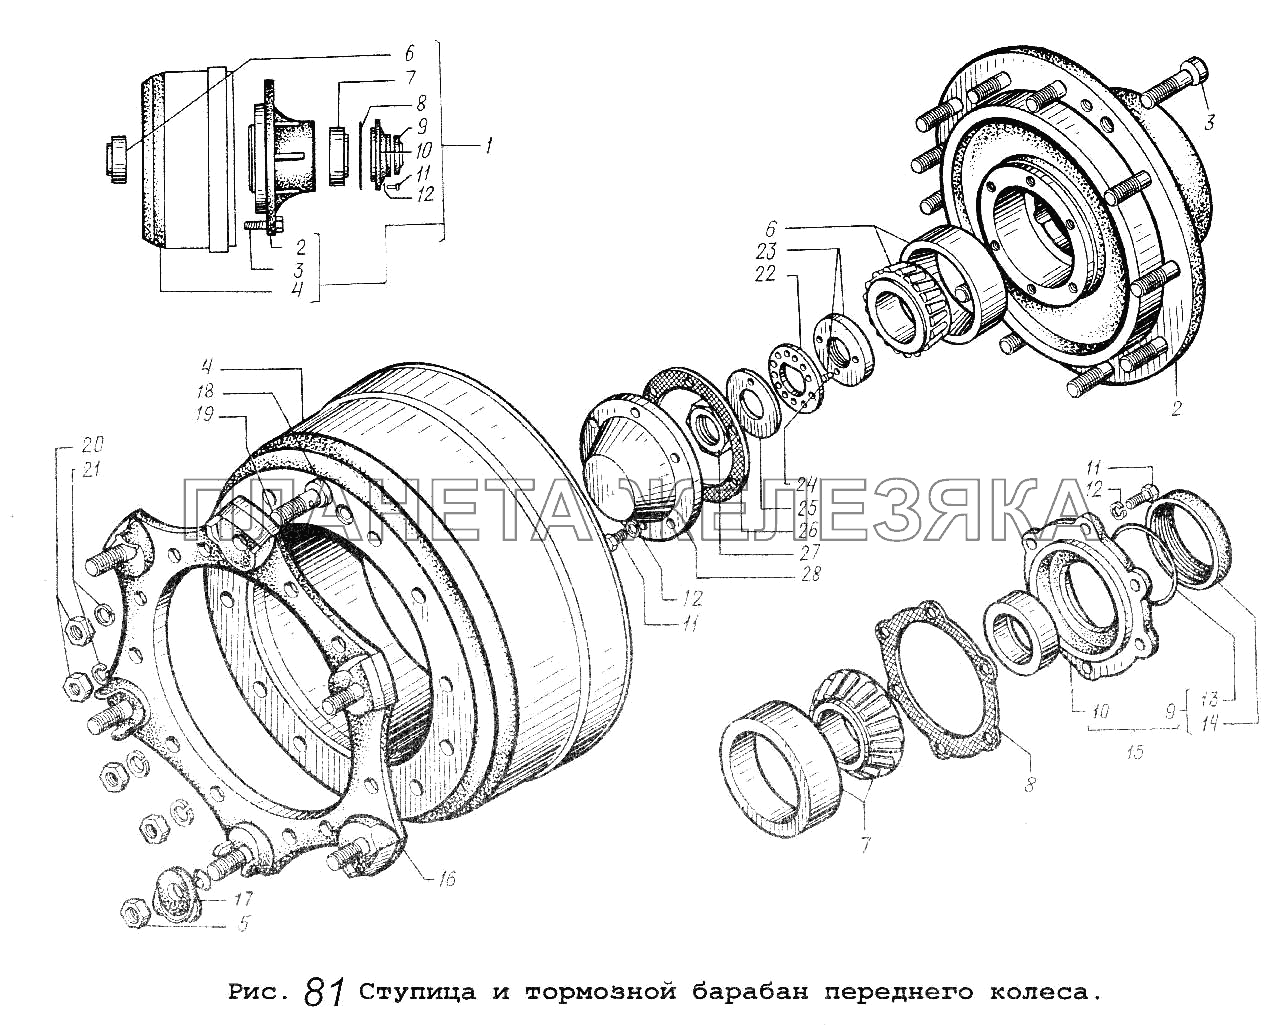 Ступица и тормозной барабан переднего колеса МАЗ-54323